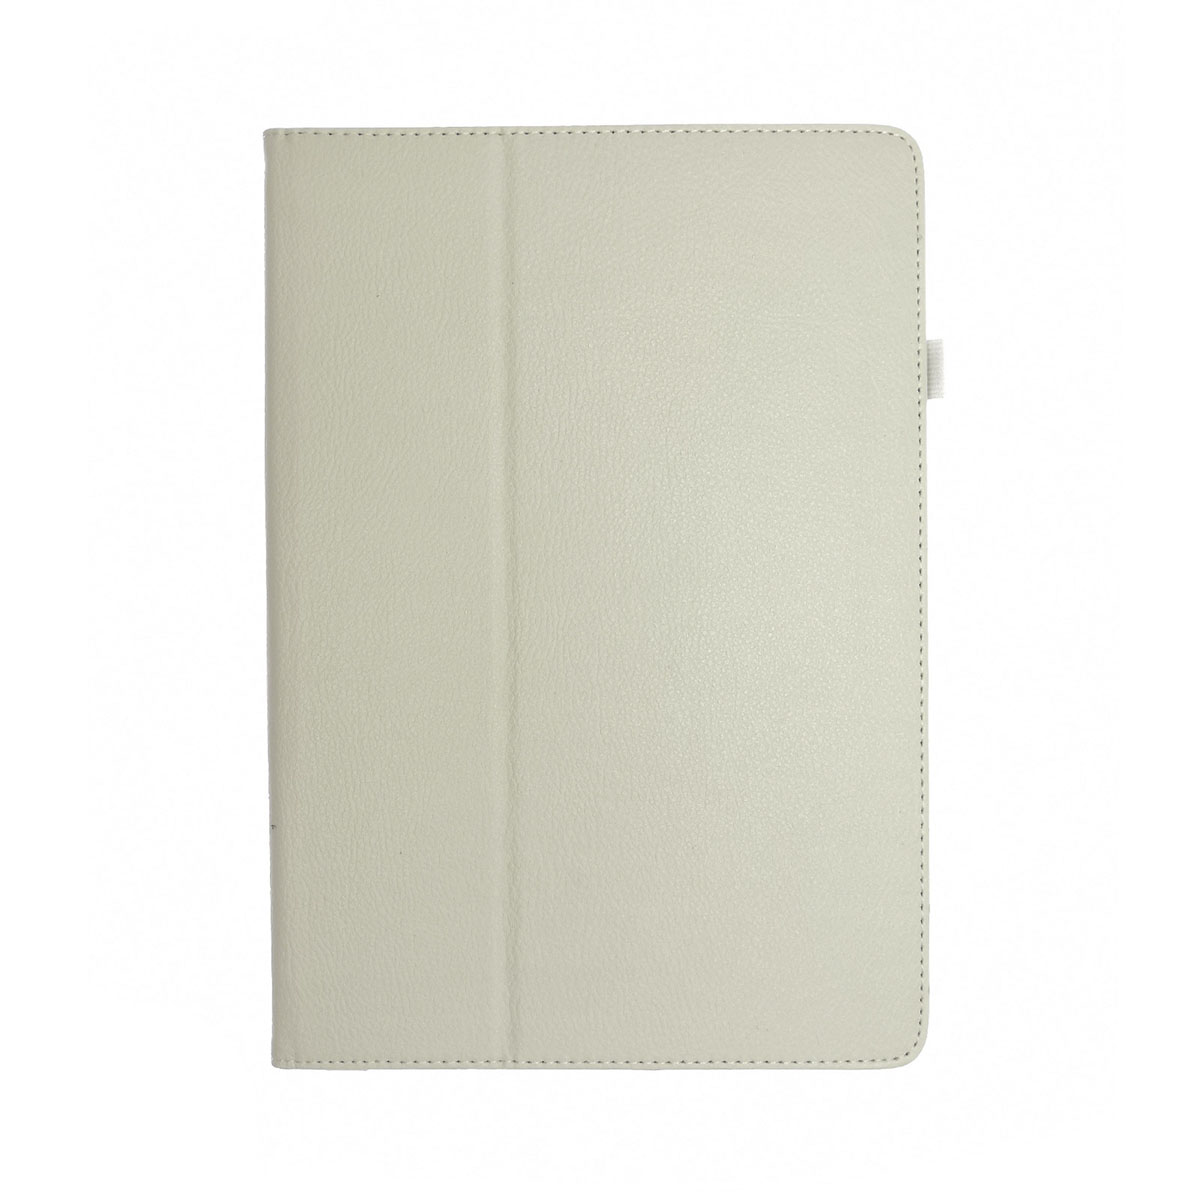 Чехол книжка для SAMSUNG Galaxy Note Pro 12.2 (SM-P900), экокожа, цвет белый.